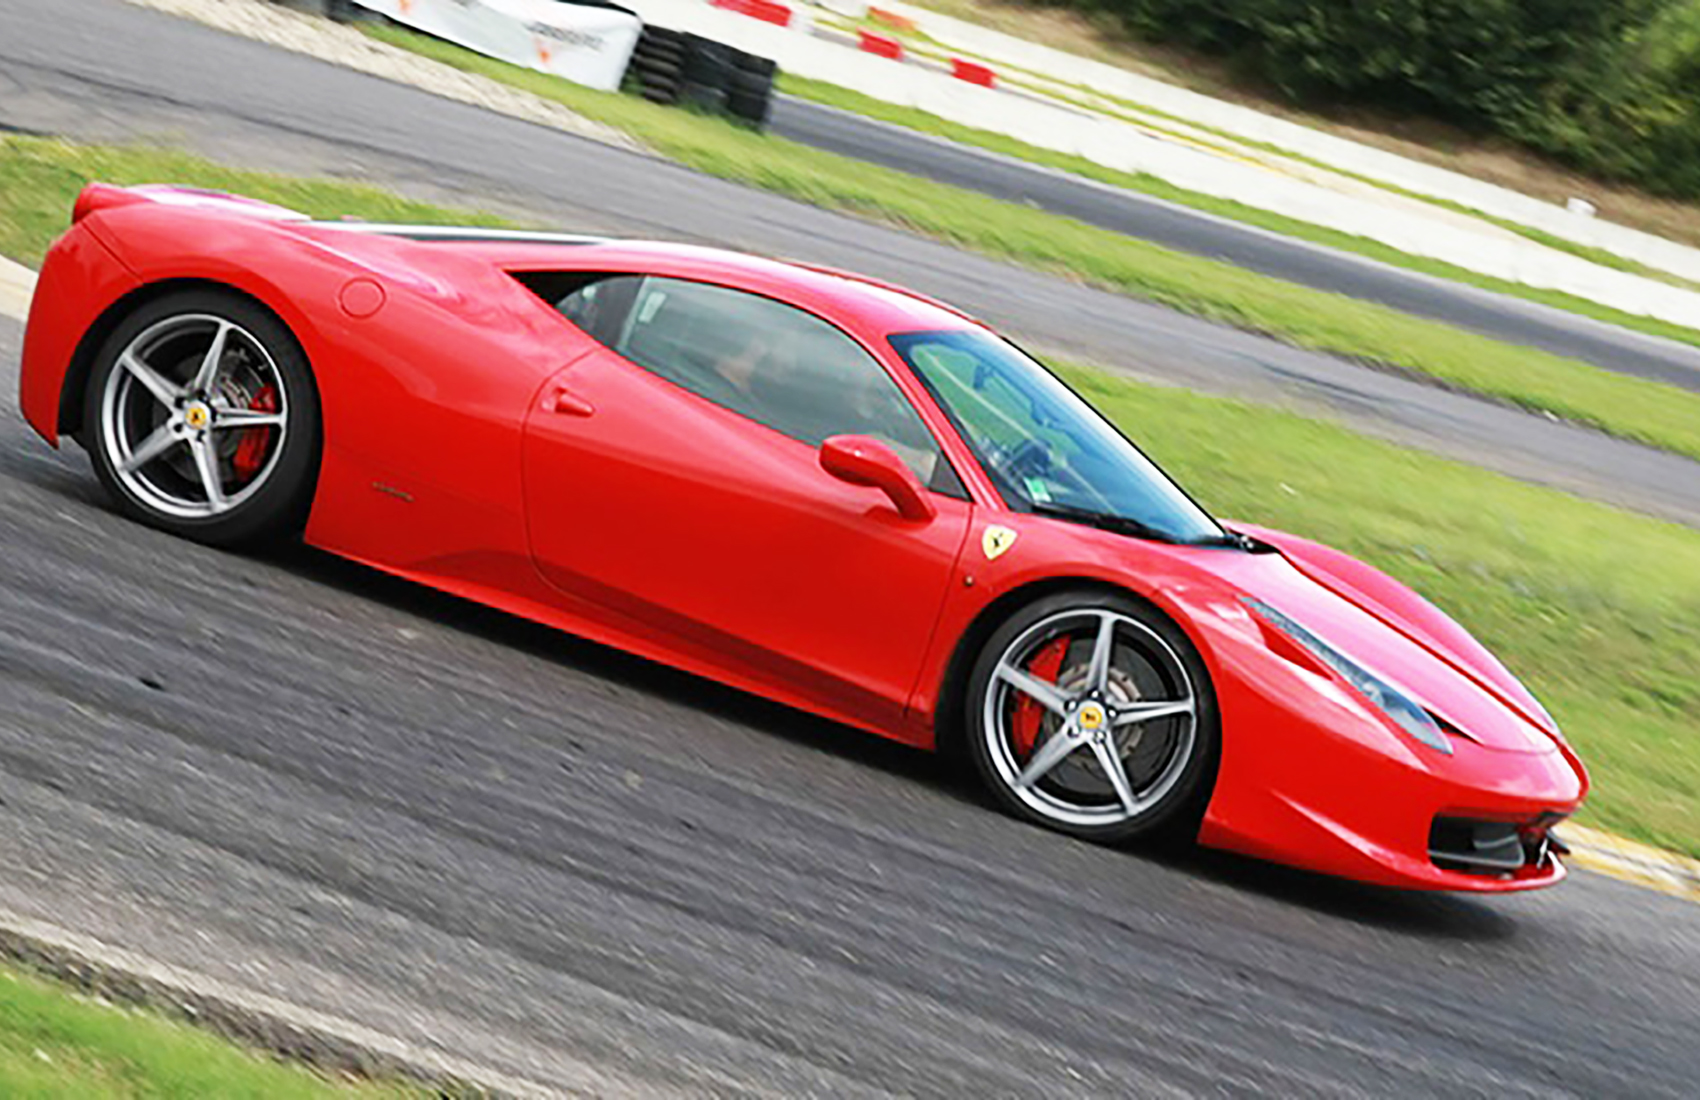 Guida Ferrari Pomposa